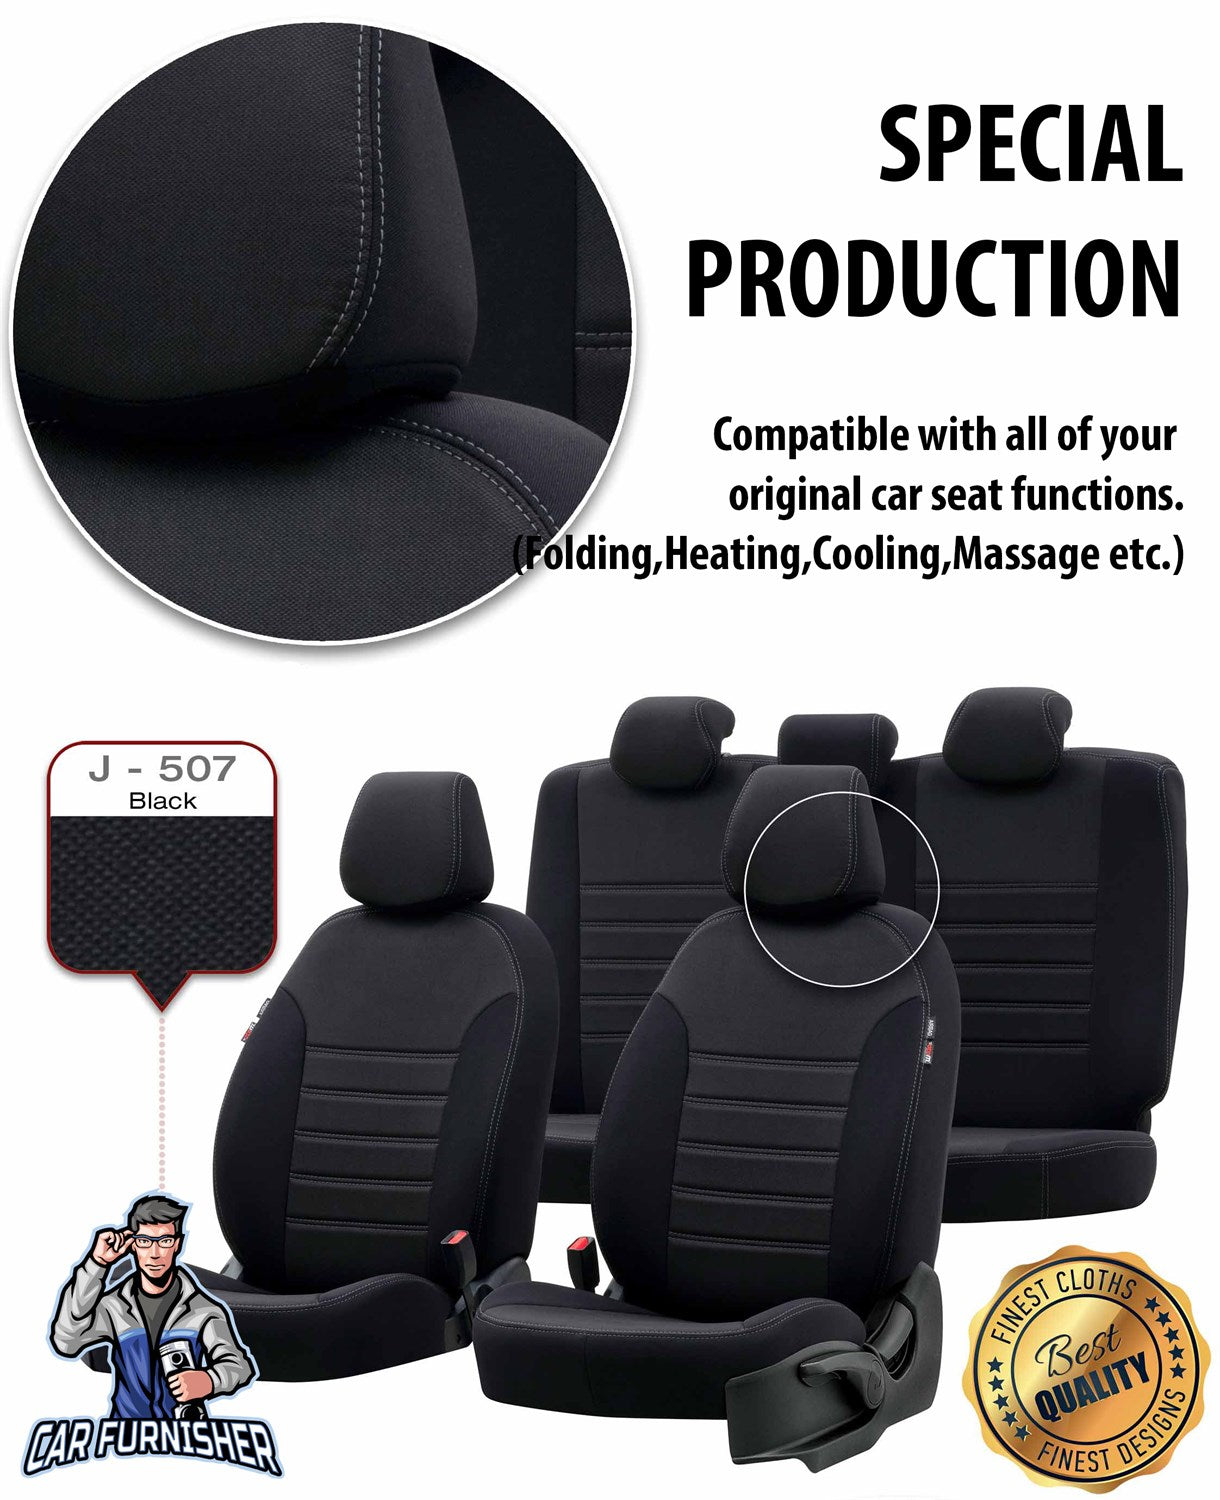 Daihatsu Materia Seat Covers Original Jacquard Design Smoked Jacquard Fabric